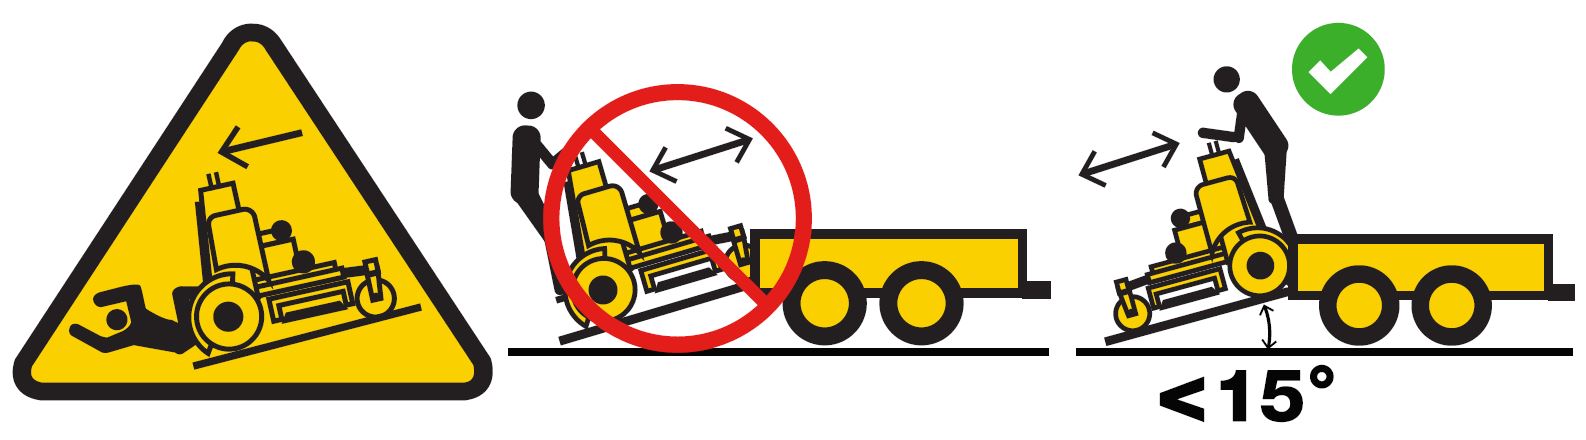 WARNING - AVOID TRANSPORT INJURY